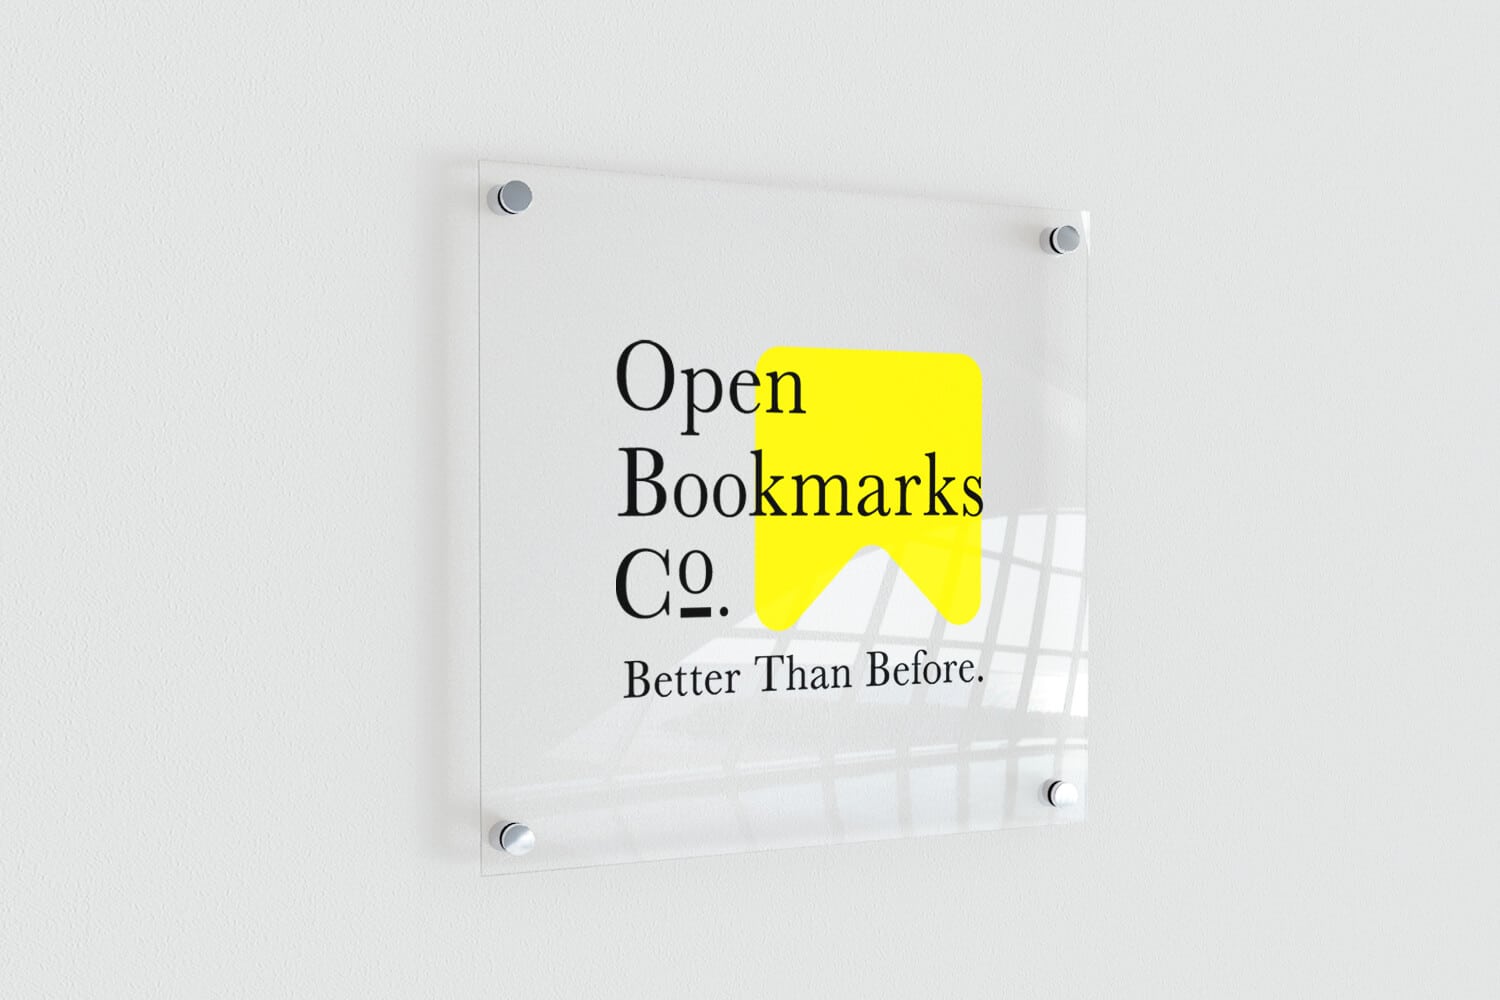 Open Bookmarks Co. Portfolio Logo Signage